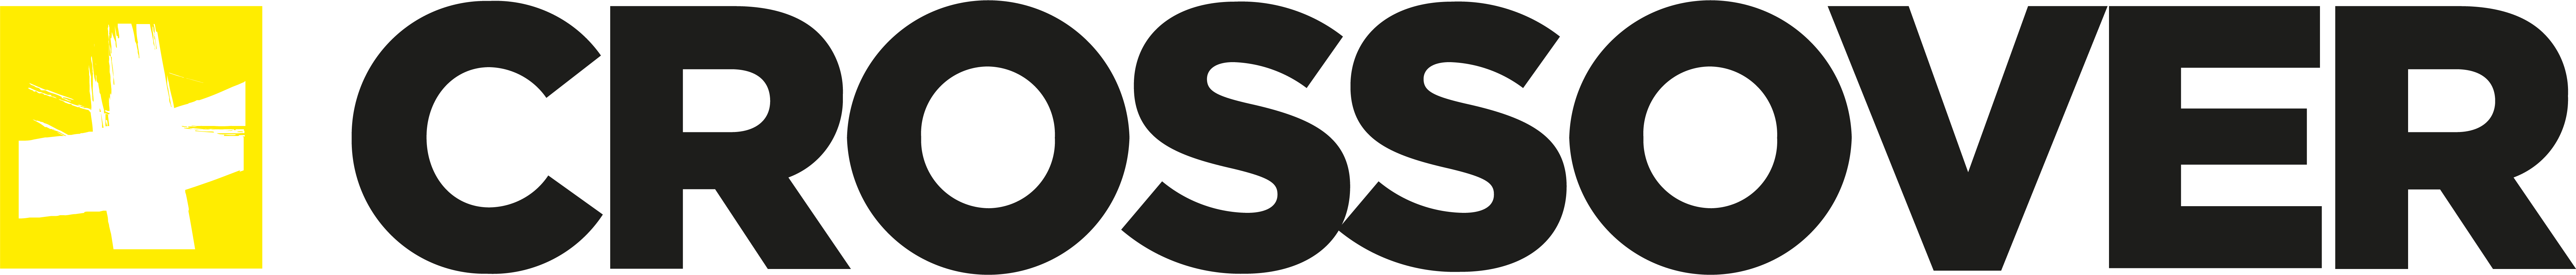 CrossOver logo